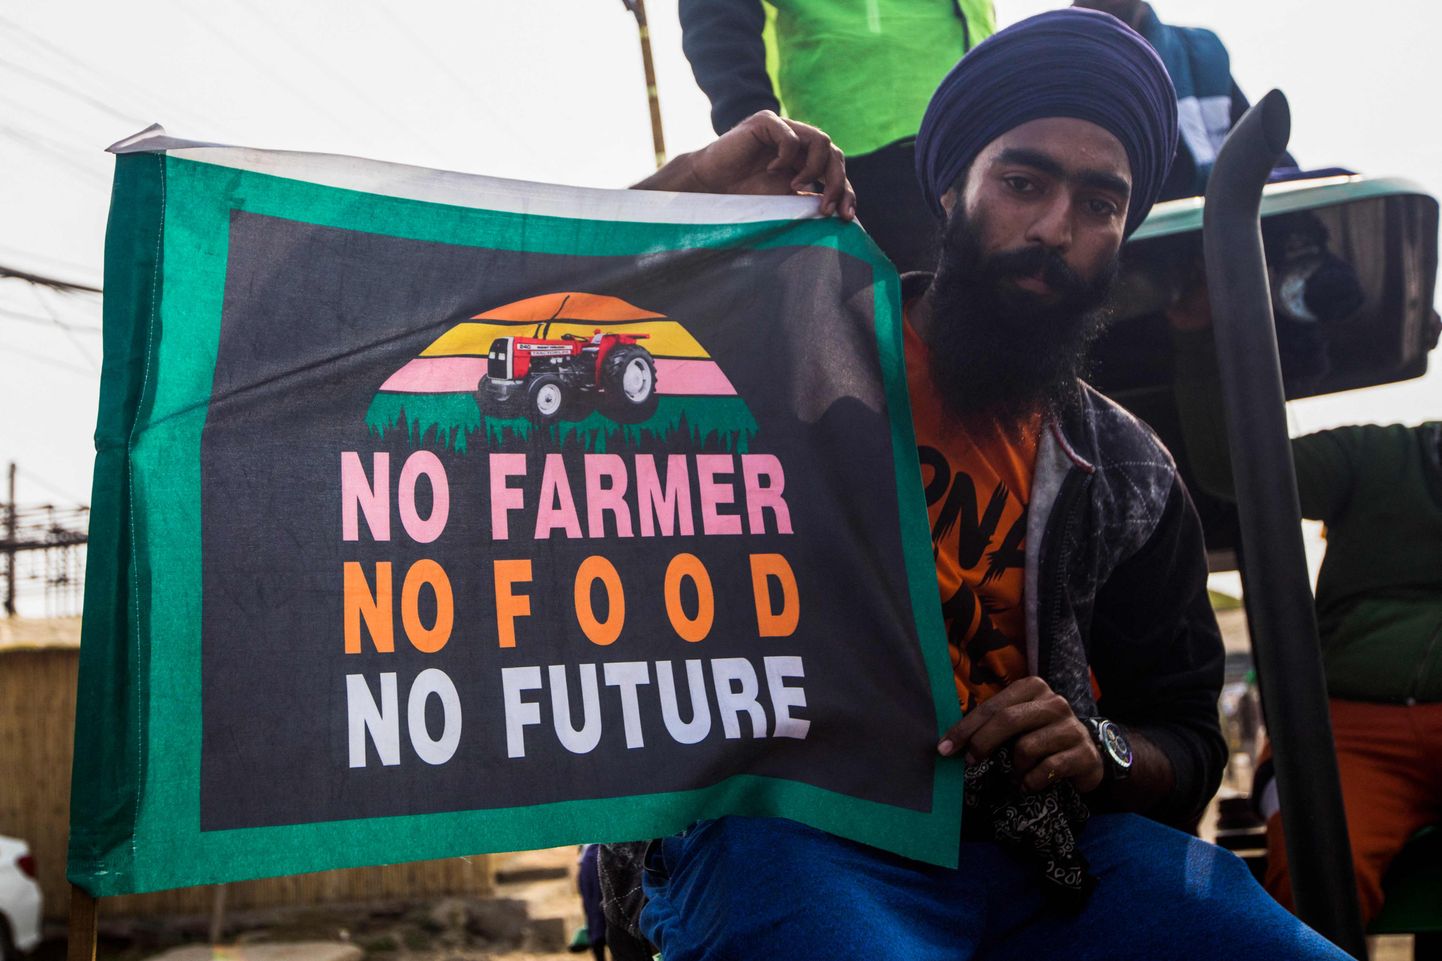 Lauksaimnieks protestē pēc tam, kad Indijas premjerministrs paziņoja par trīs lauksaimniecības reformas likumu atcelšanu, kas novembrī Singhu pilsētā izraisīja gandrīz gadu ilgus milzīgus lauksaimnieku protestus visā valstī.